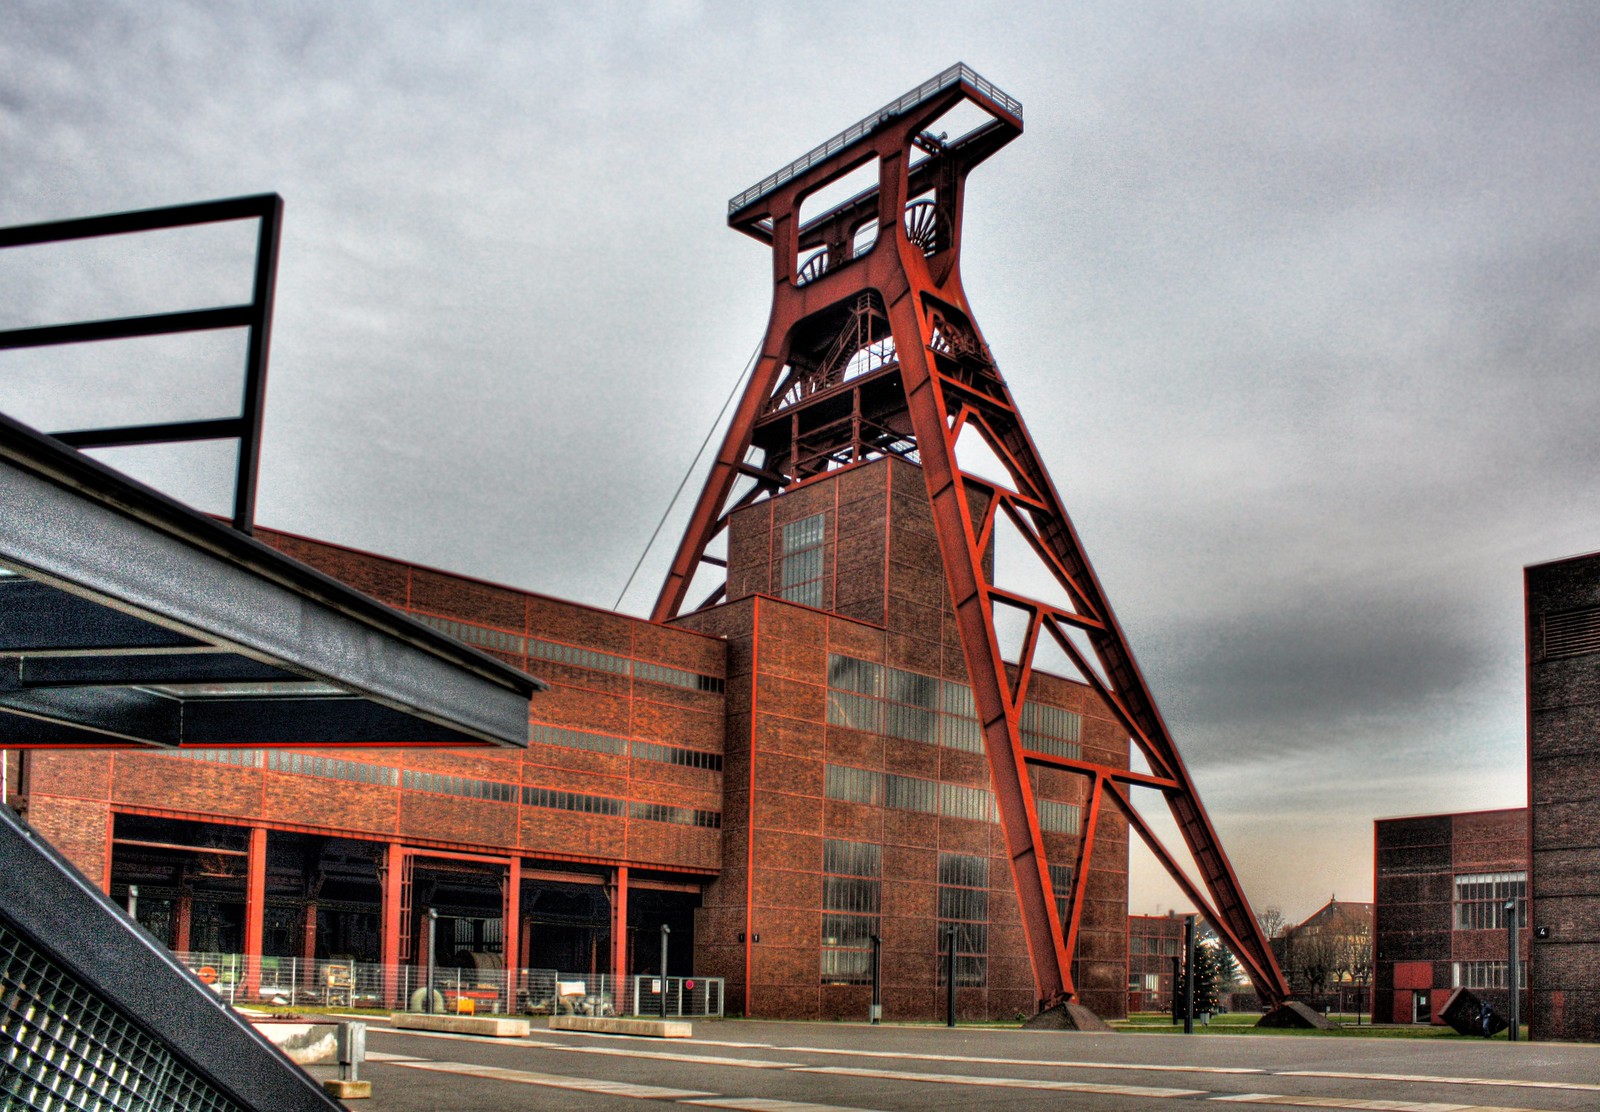 O Complexo Industrial da Mina de Carvão Zollverein, em Essen, na Alemanha, é uma das obras-primas geradas pelo estilo Bauhaus. Uma indústria que trouxe avanços para a época, tanto em tecnologia quanto em arquitetura (Foto: Daniel Mennerich)